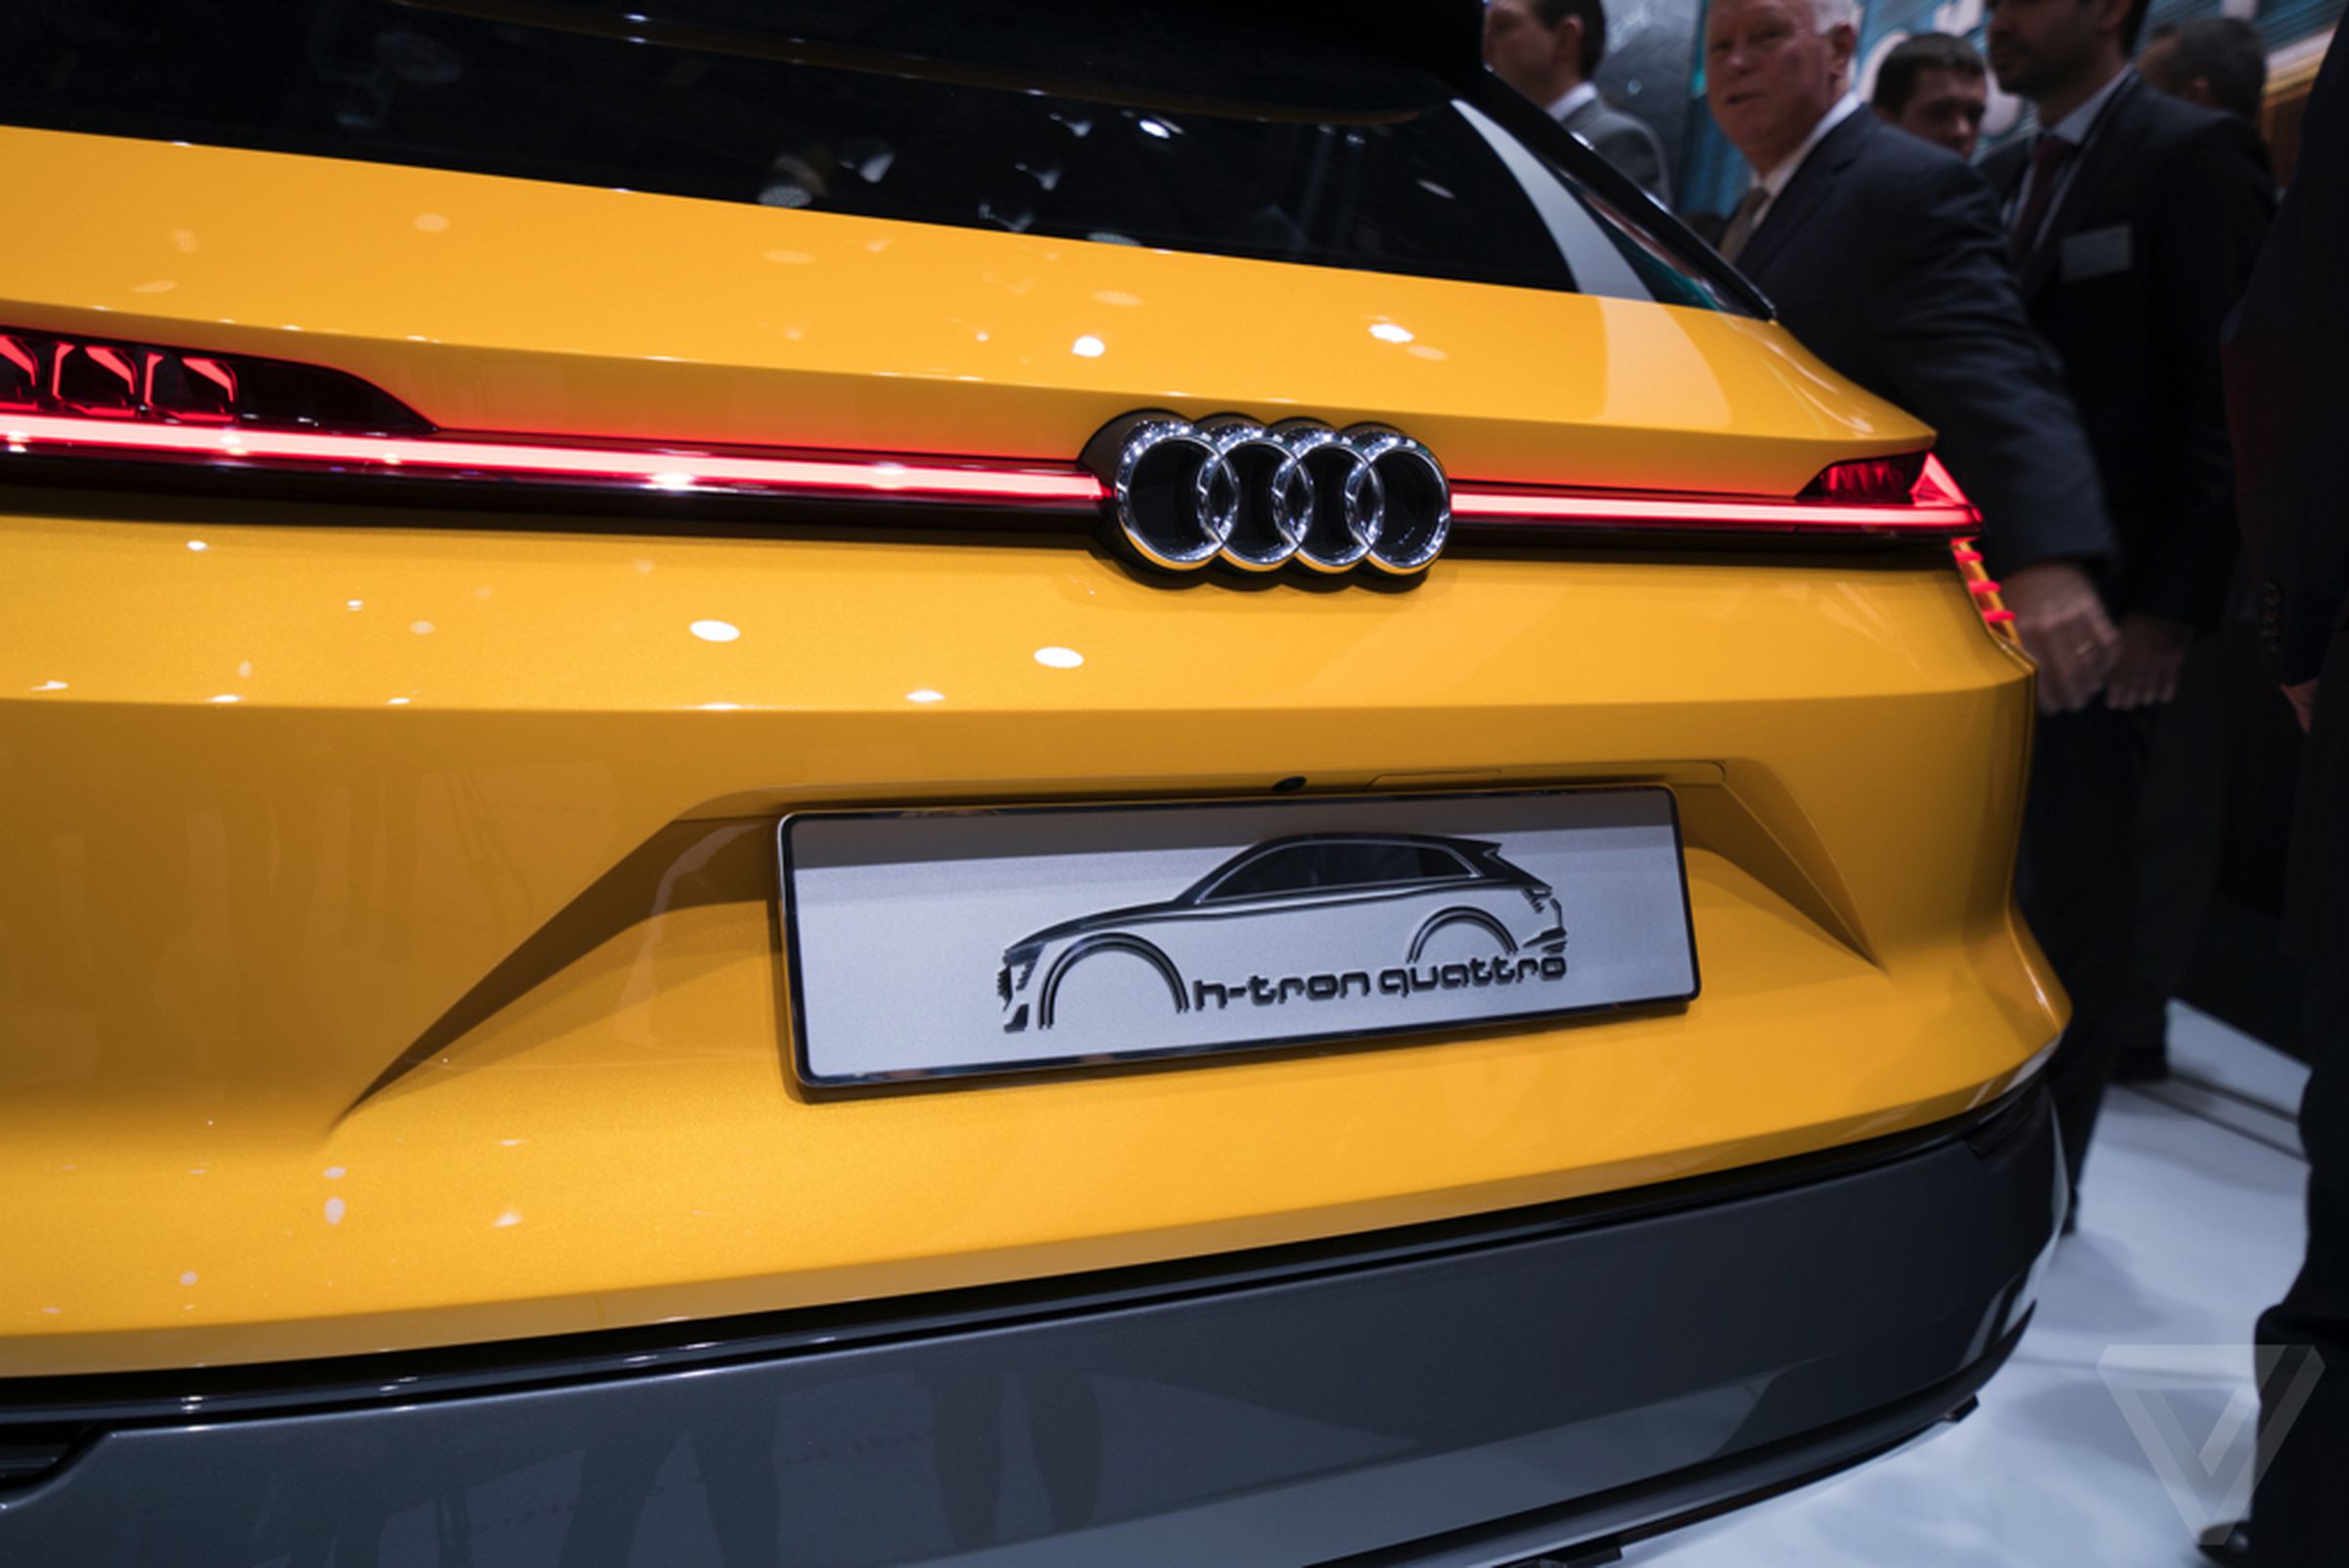 Audi h-tron quattro concept at the Detroit Auto Show